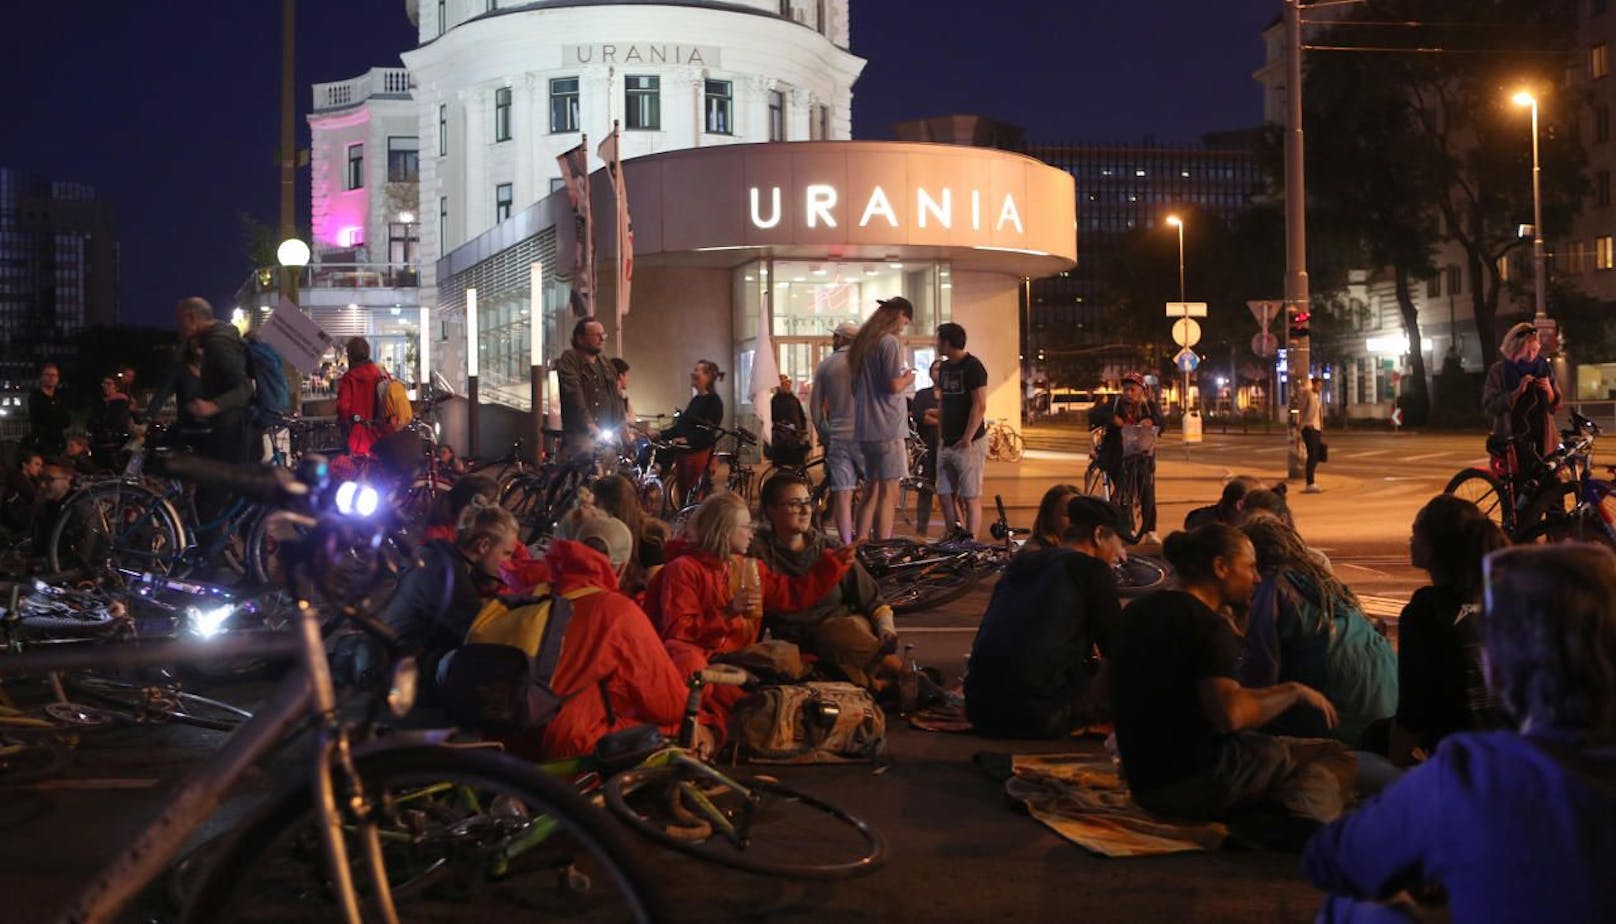 Bei der Urania blockierten Radfahrer die Fahrbahn.

